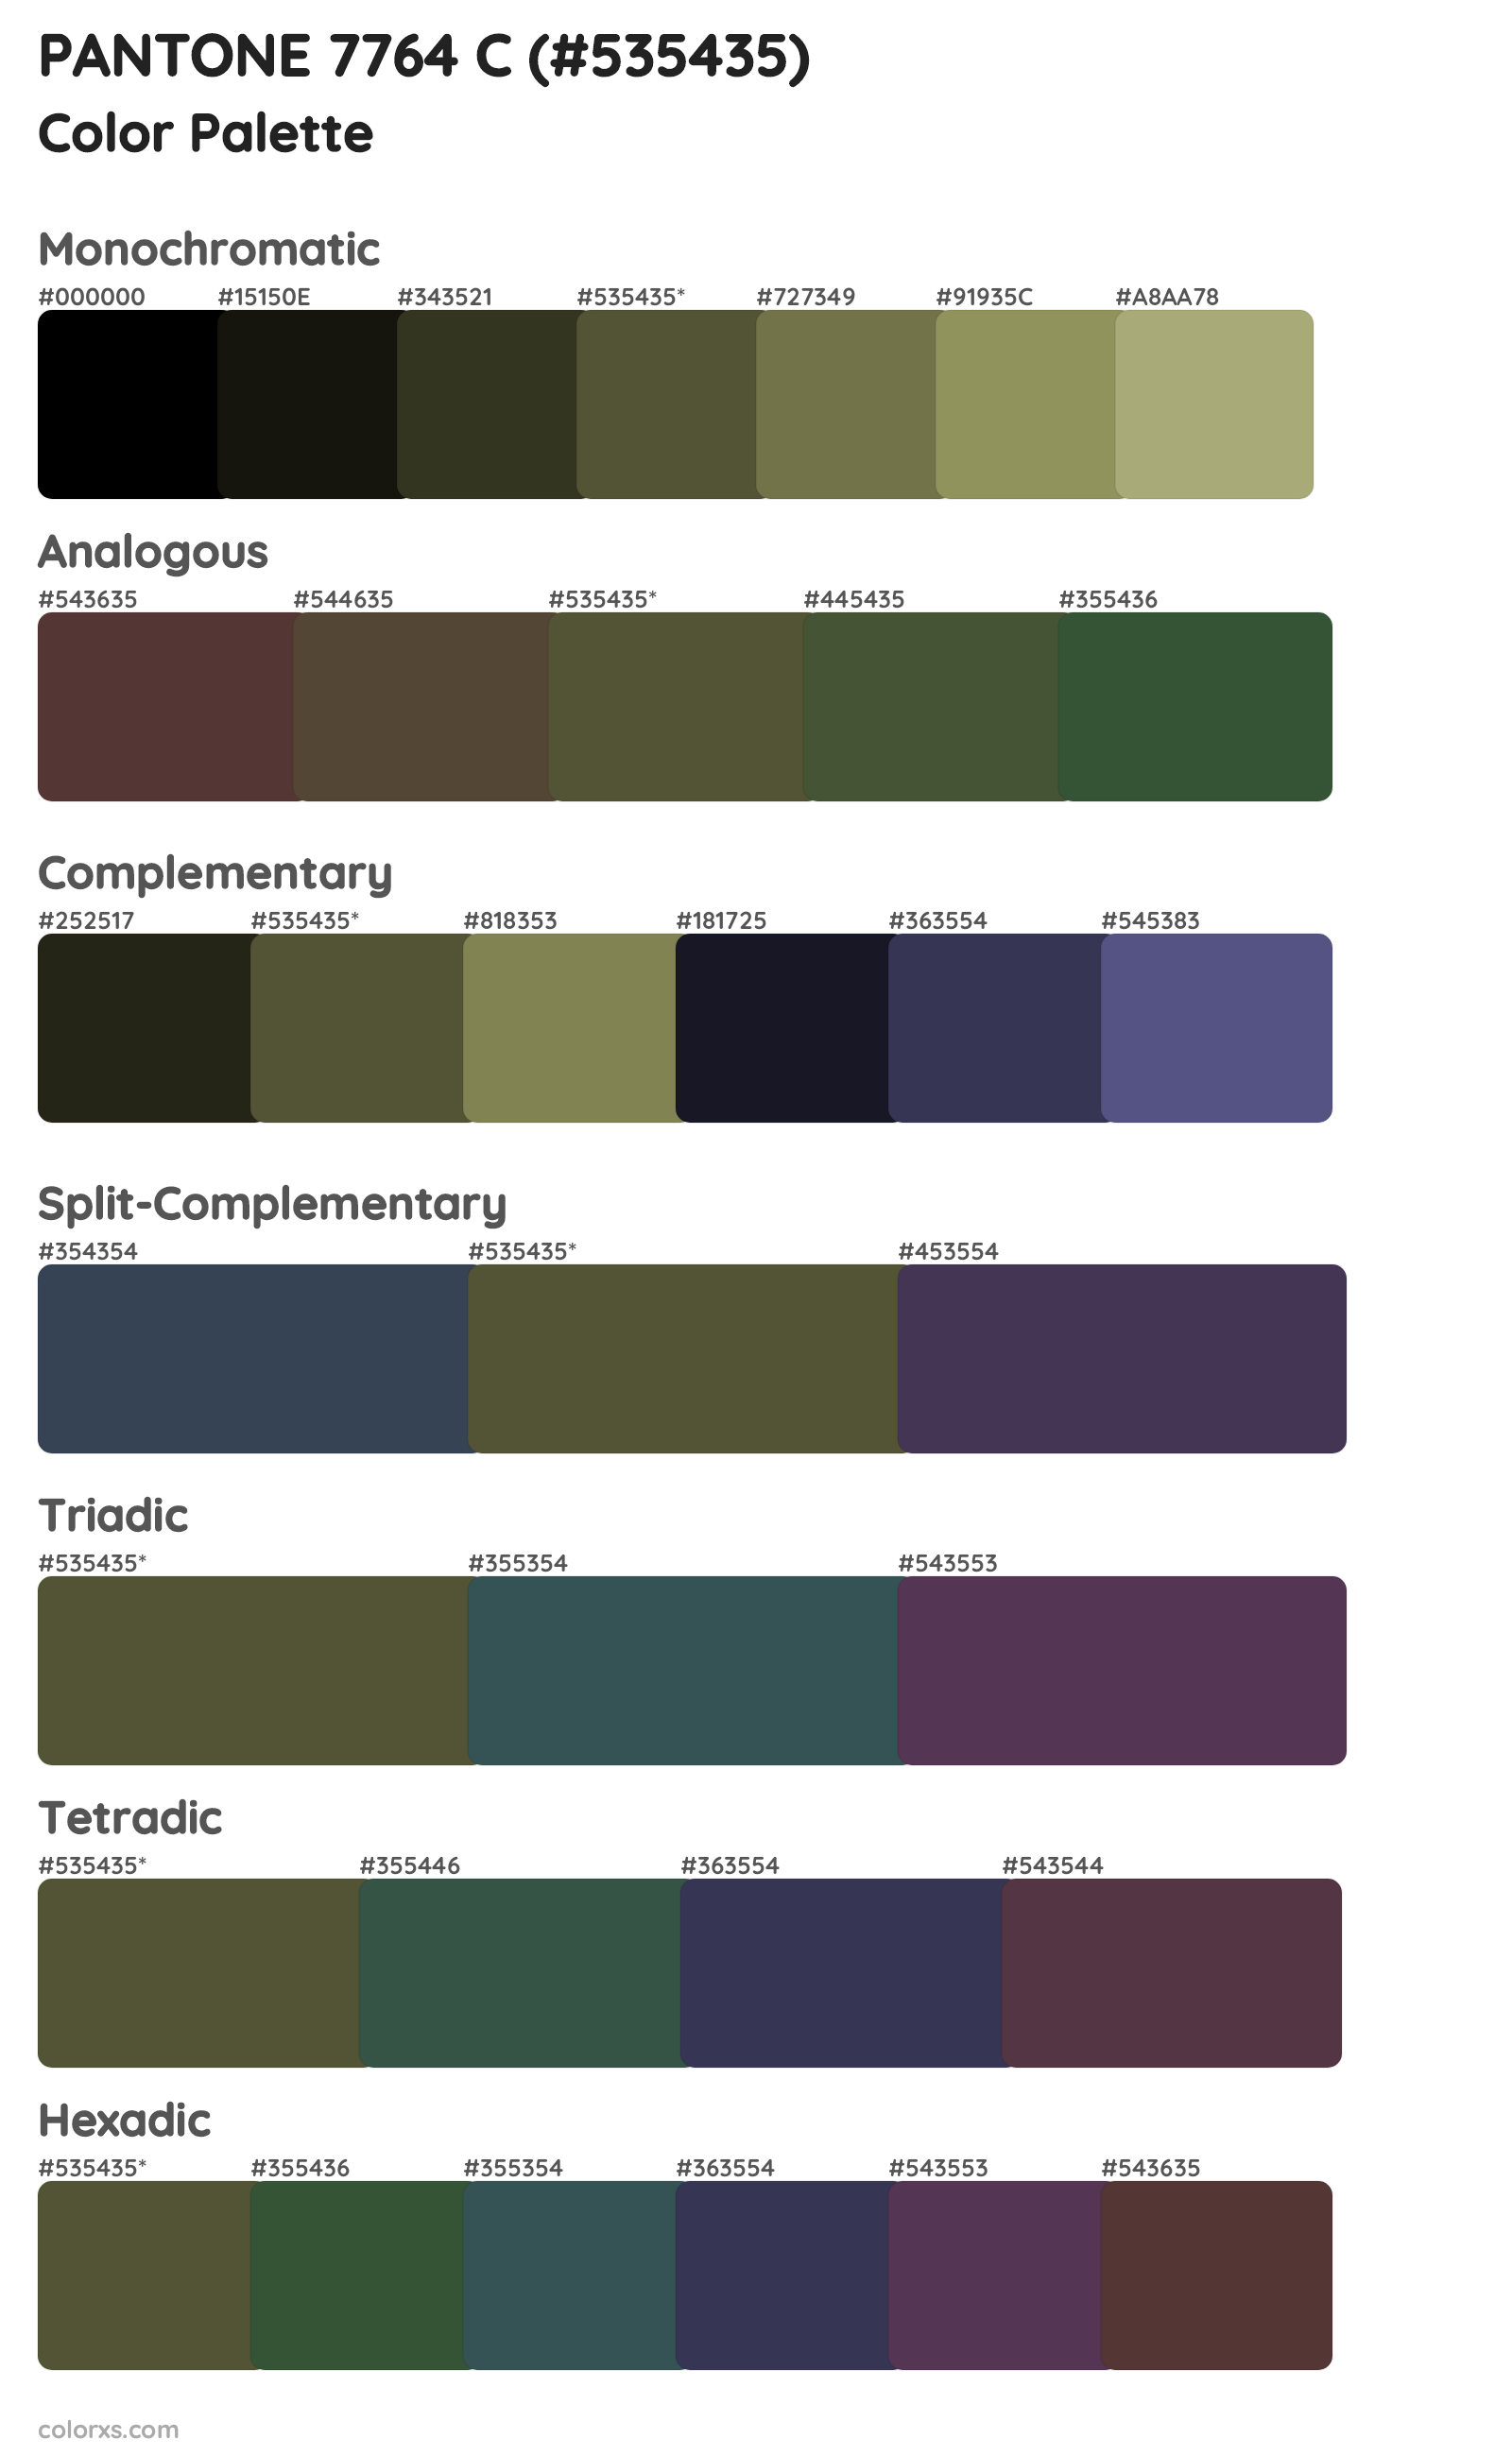 PANTONE 7764 C Color Scheme Palettes